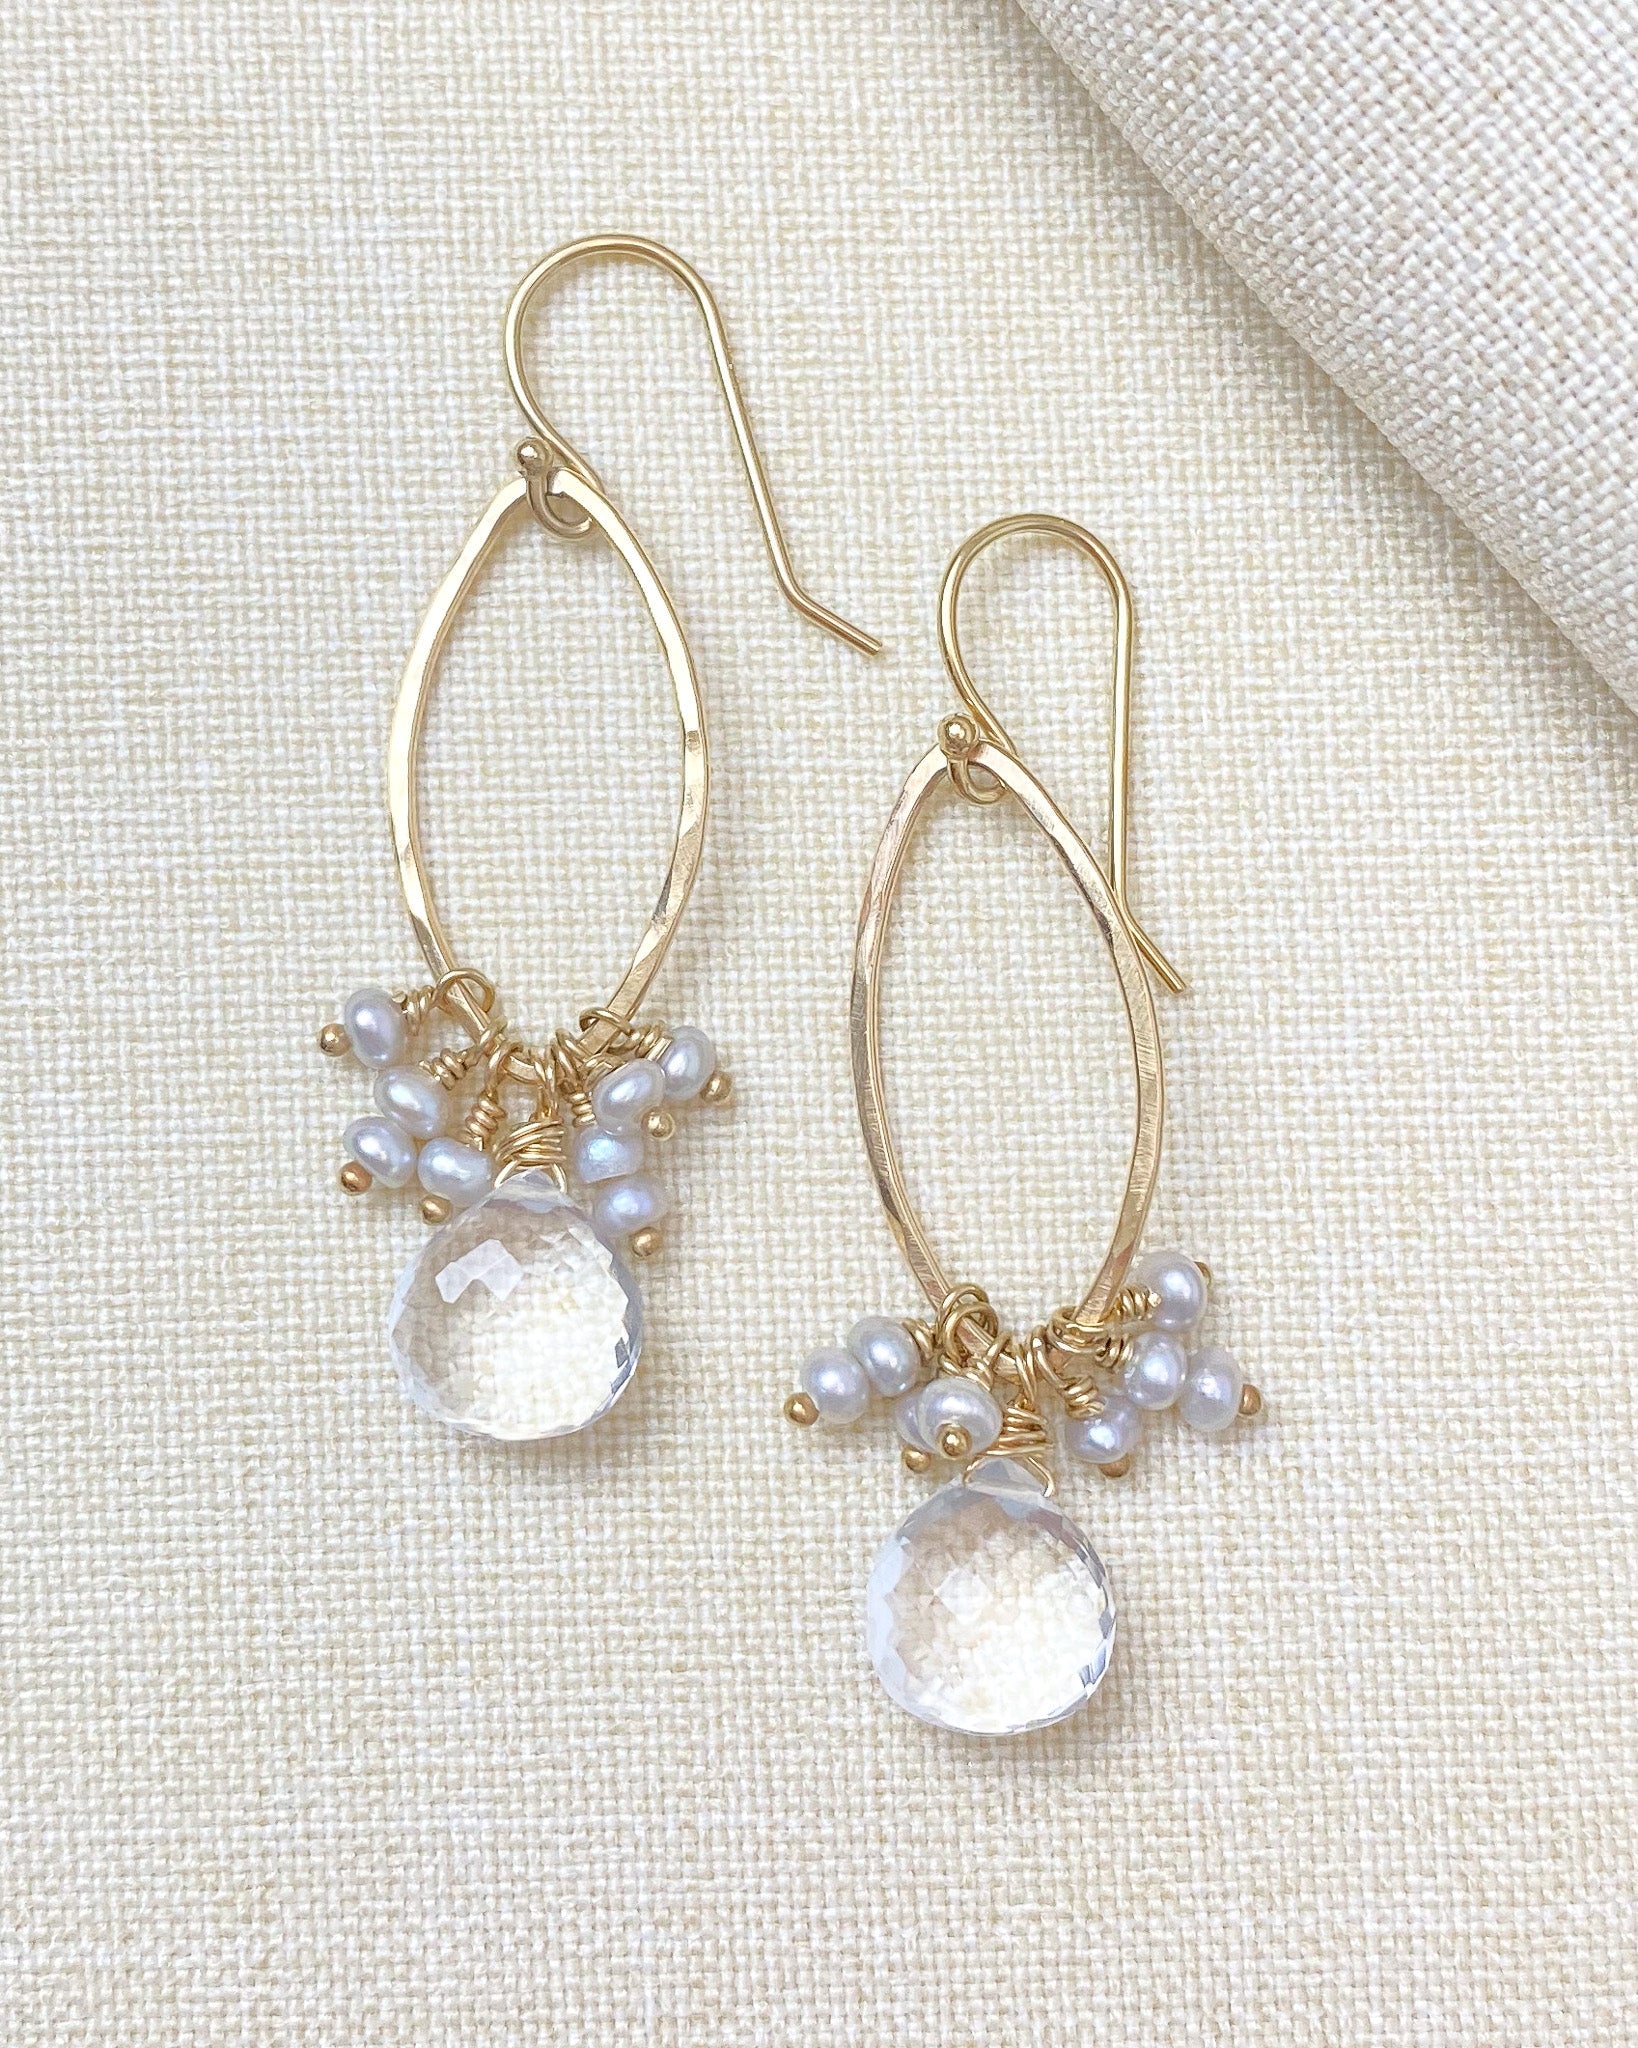 New Kate Spade Victoria Pearl Crystal Cluster Stud Earrings Blue/Pink | eBay